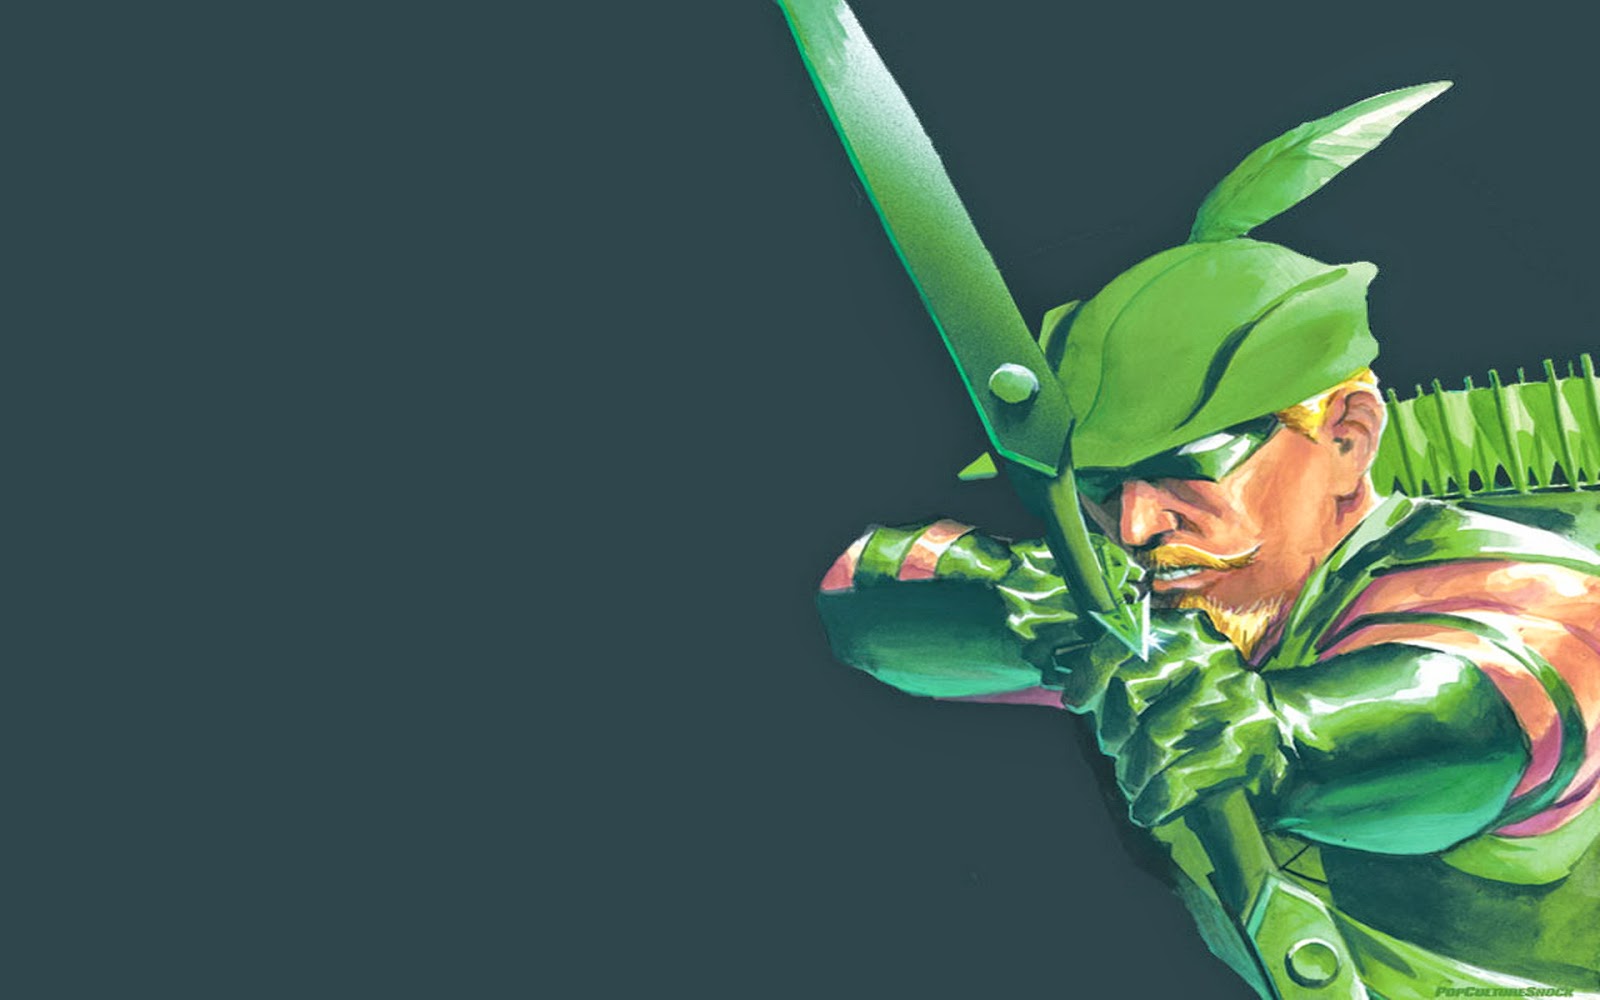 Kumpulan Gambar Green Arrow Gambar Lucu Terbaru Cartoon Animation Pictures